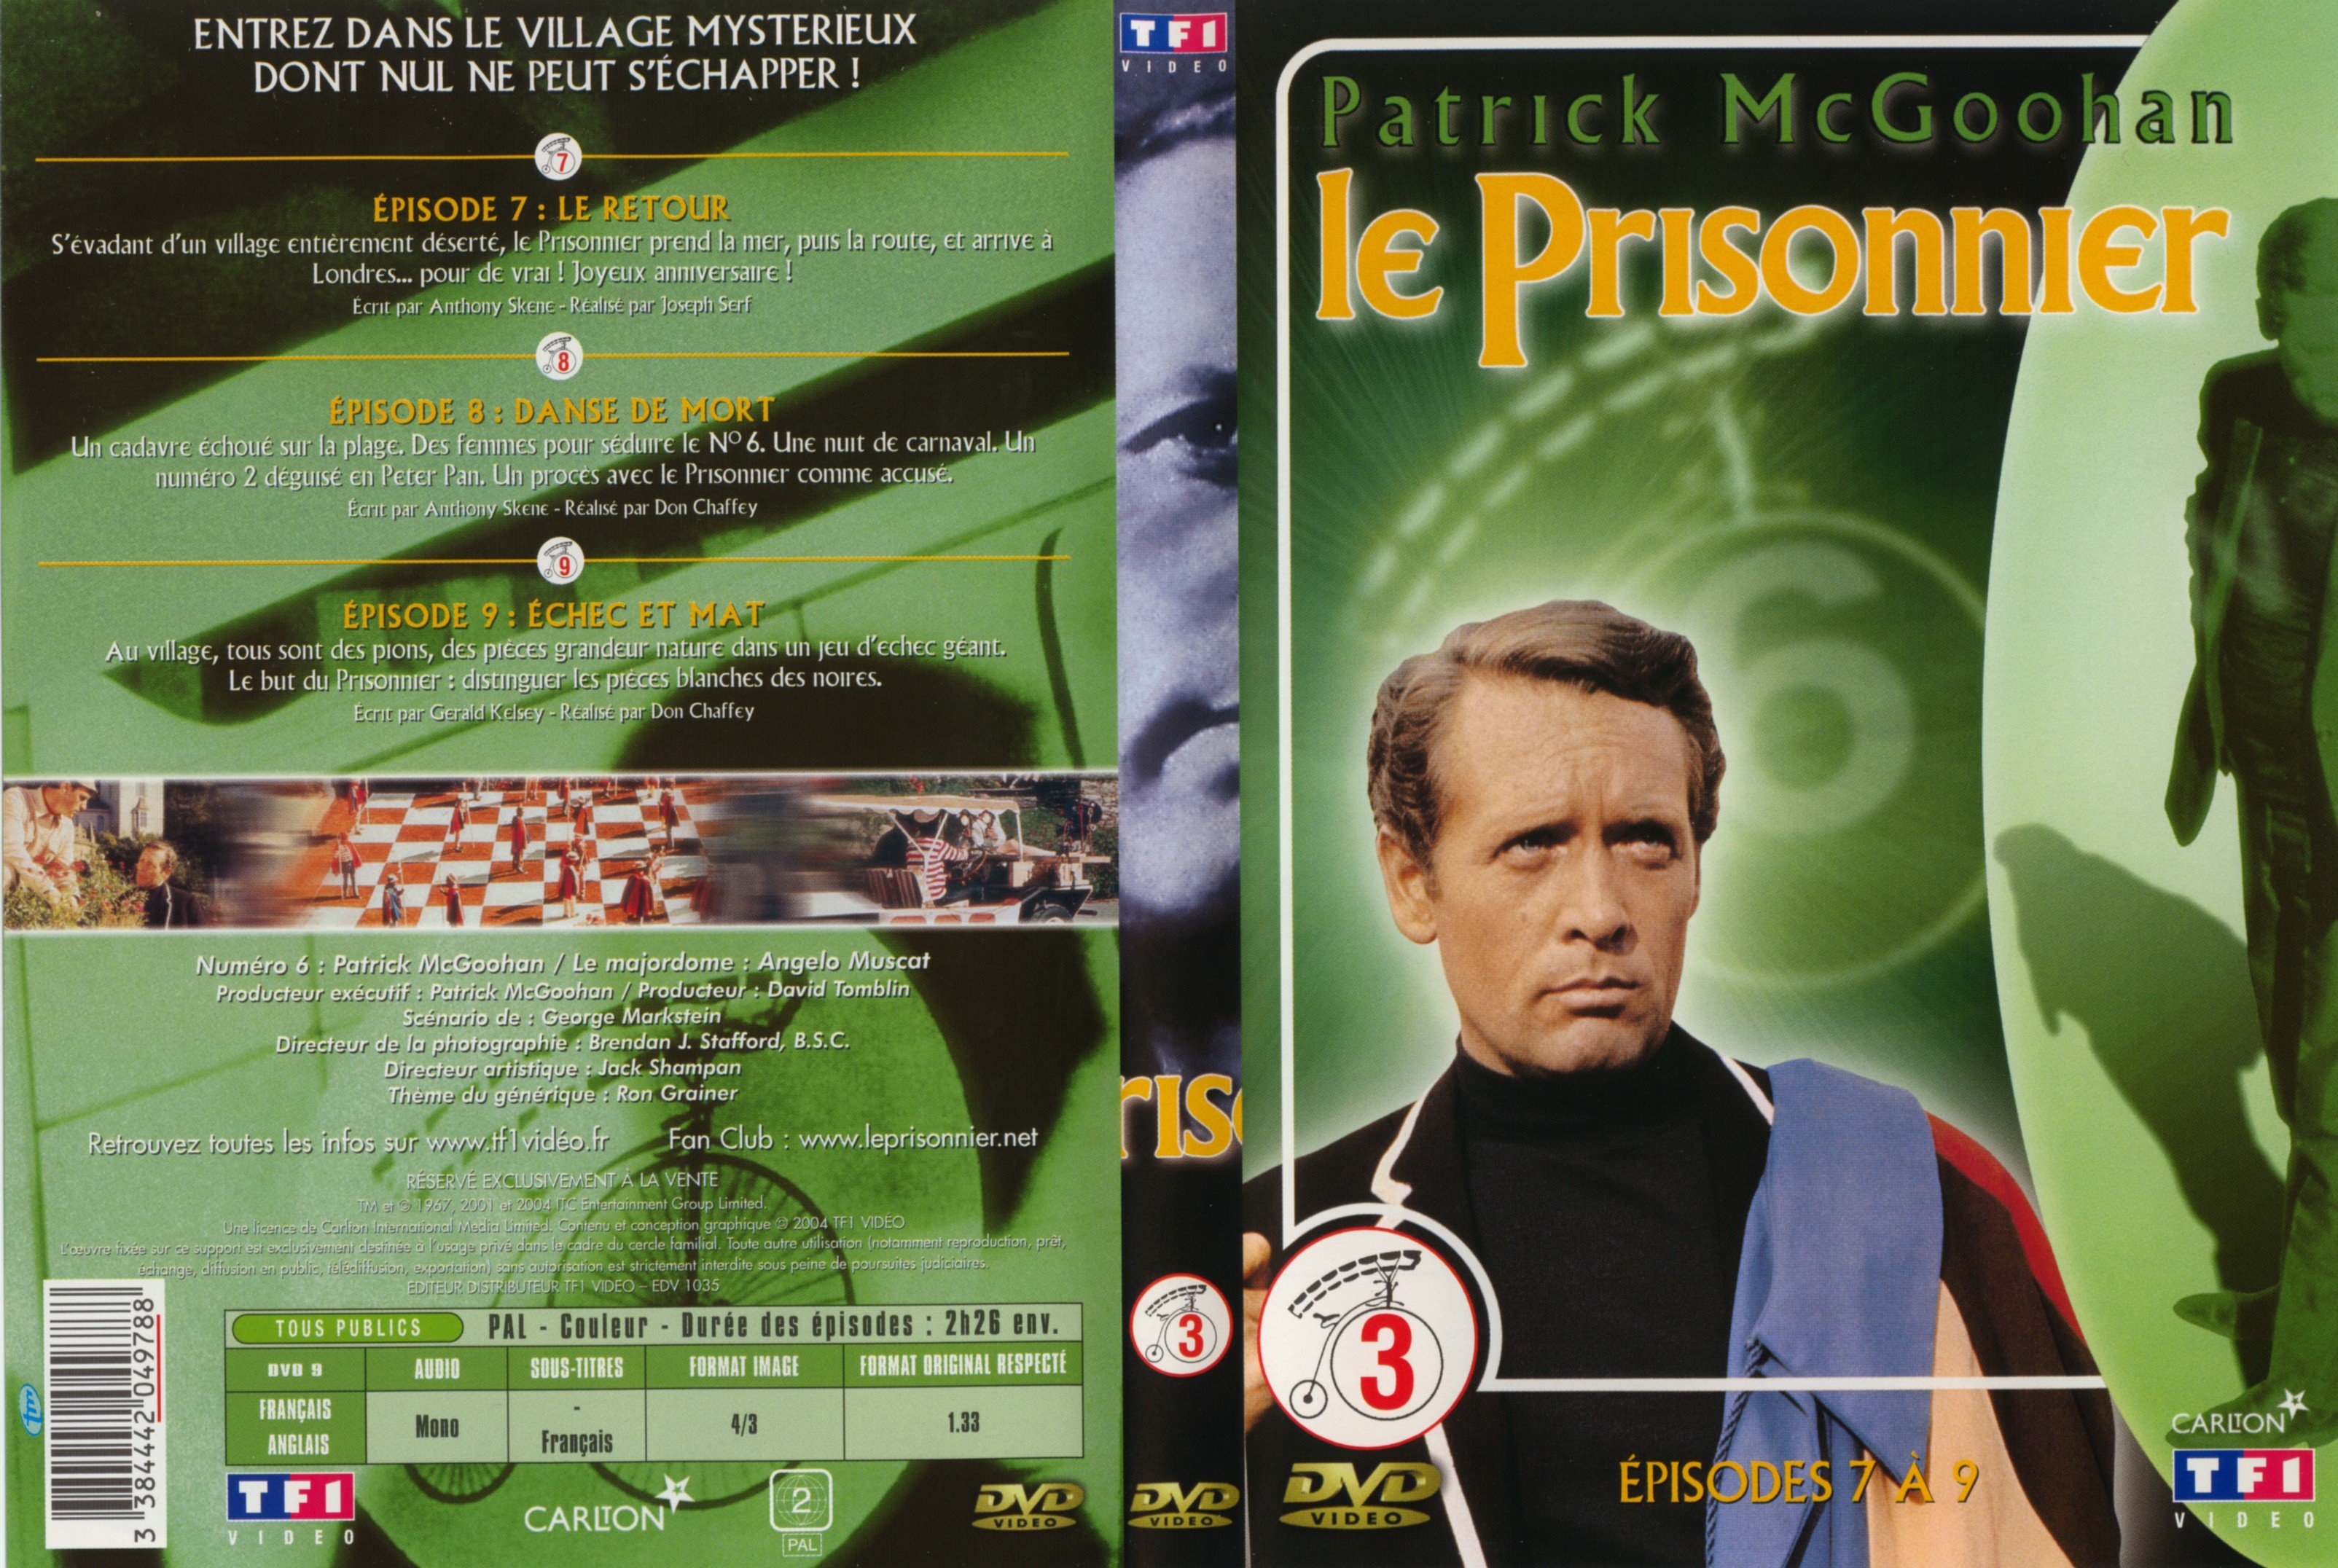 Jaquette DVD Le prisonnier DVD 3